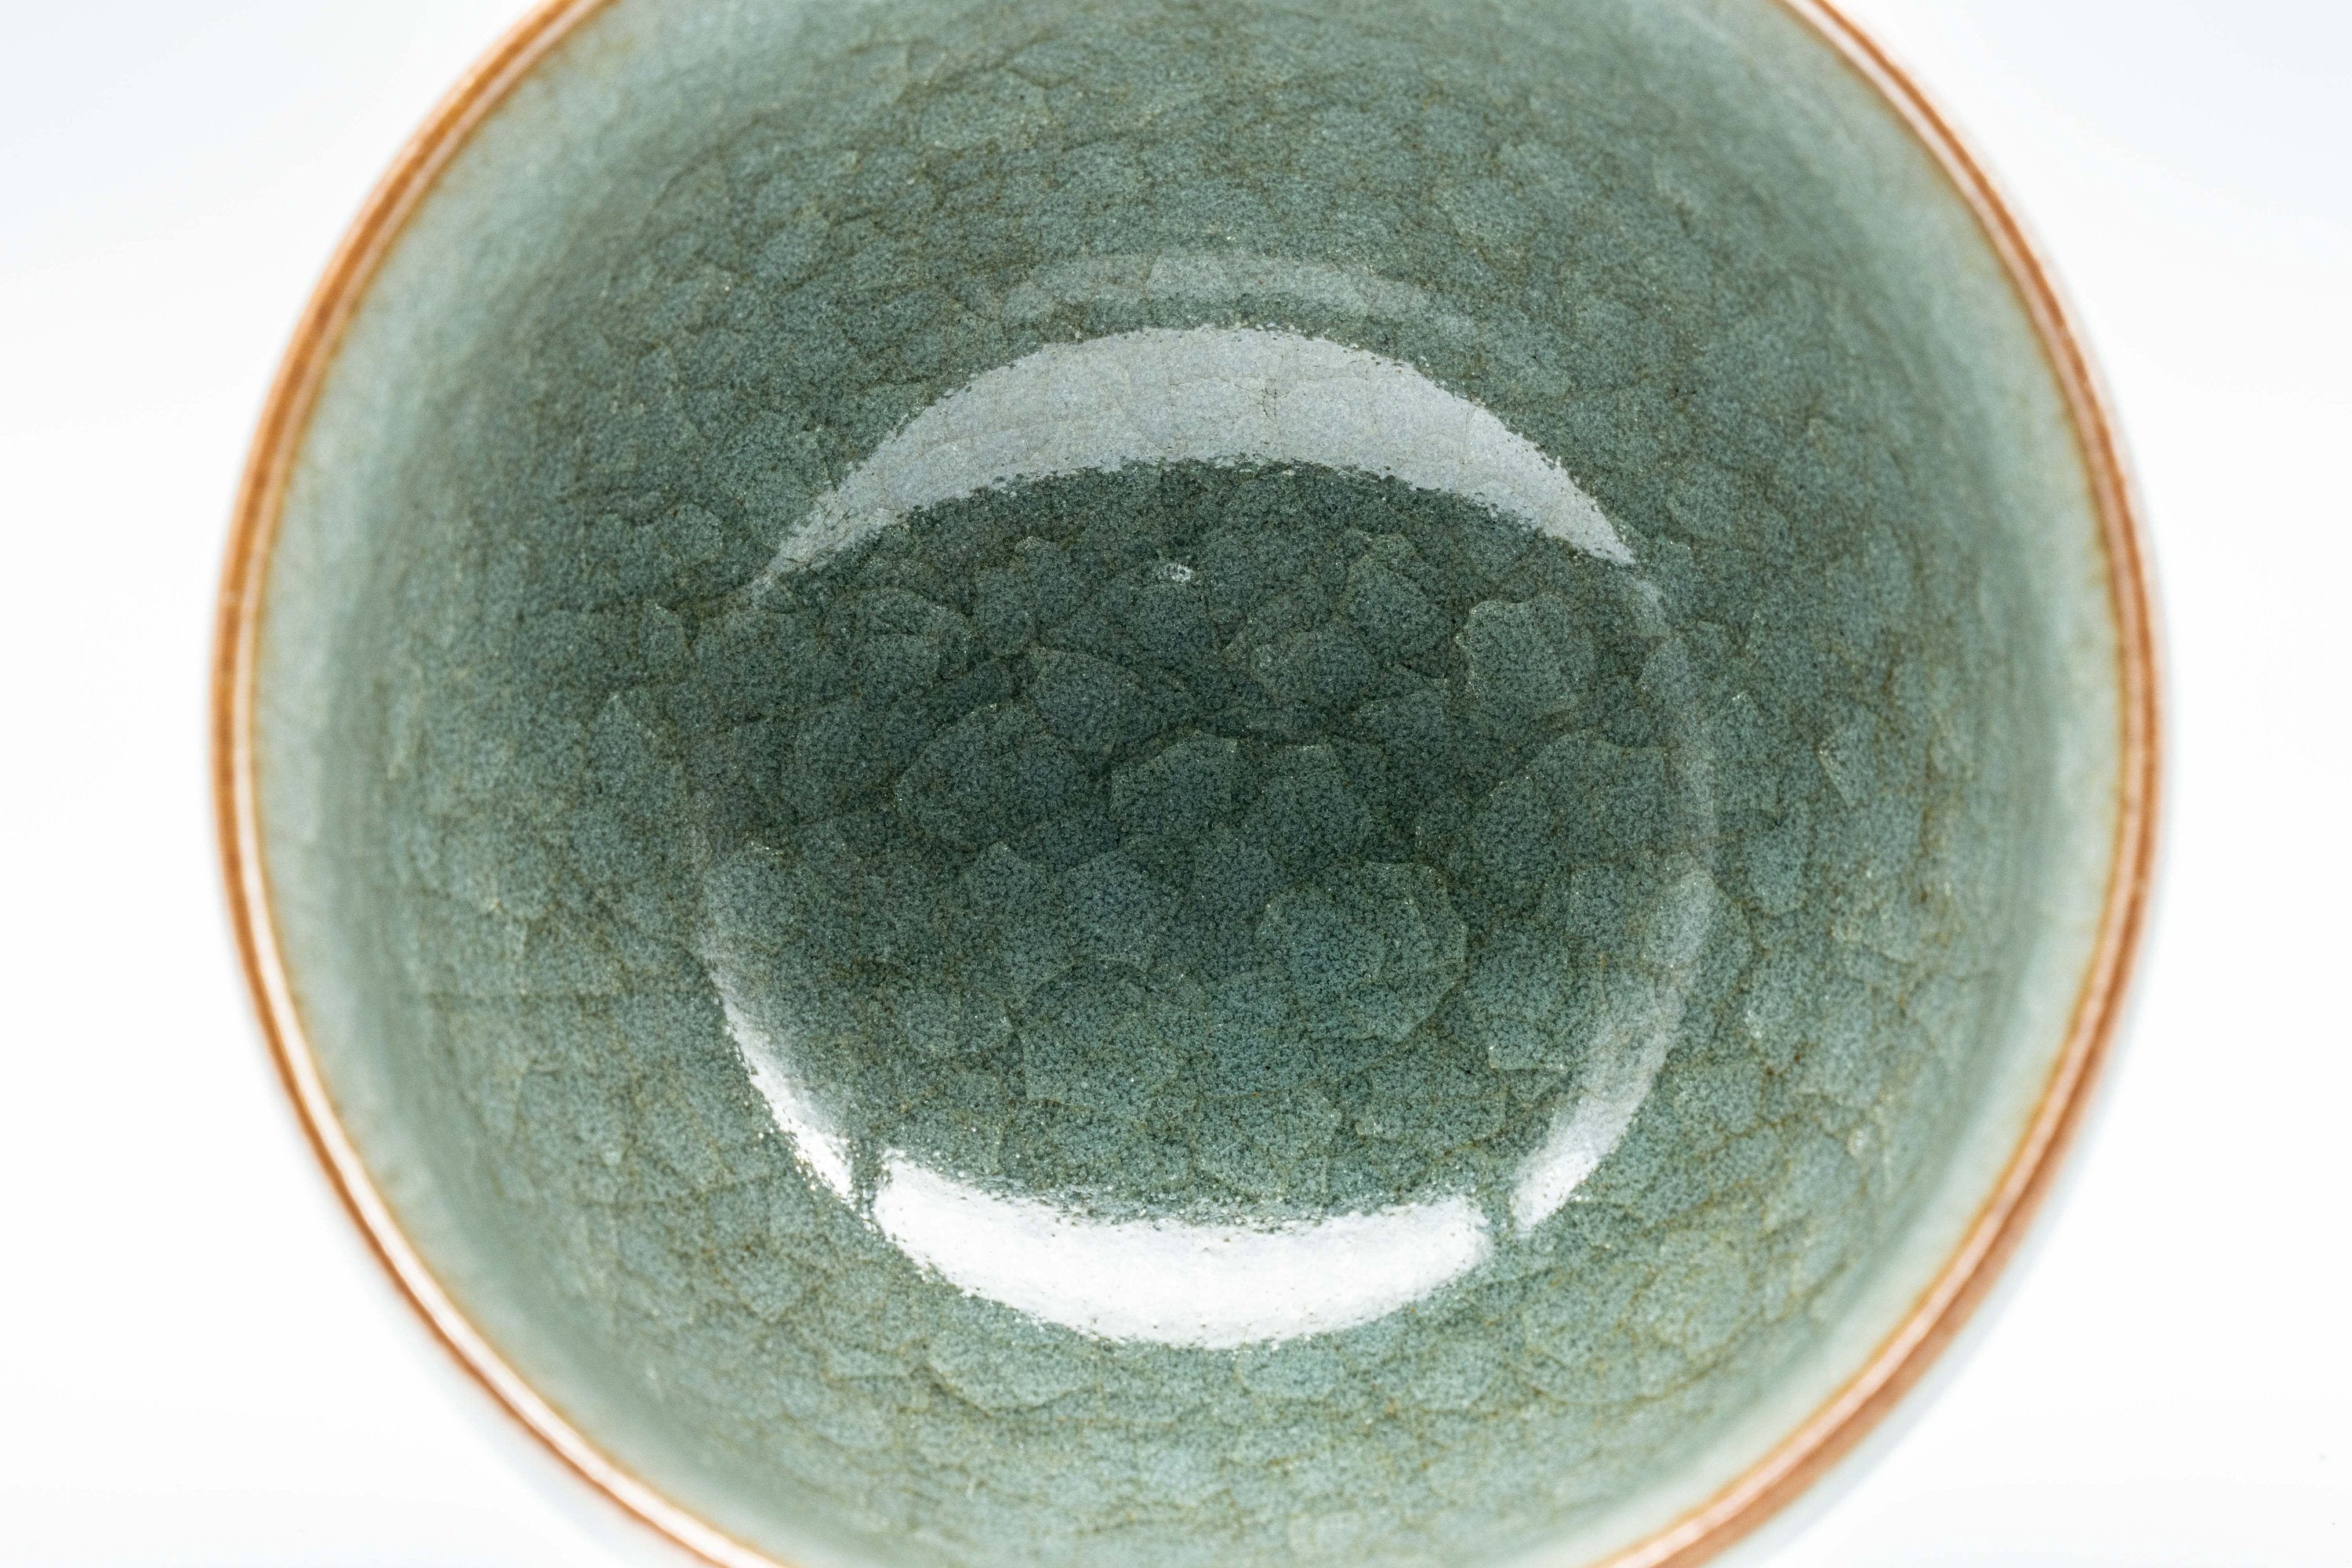 Japanese Teacup - Celadon Glazed Kiyomizu-yaki Yunomi - 130ml